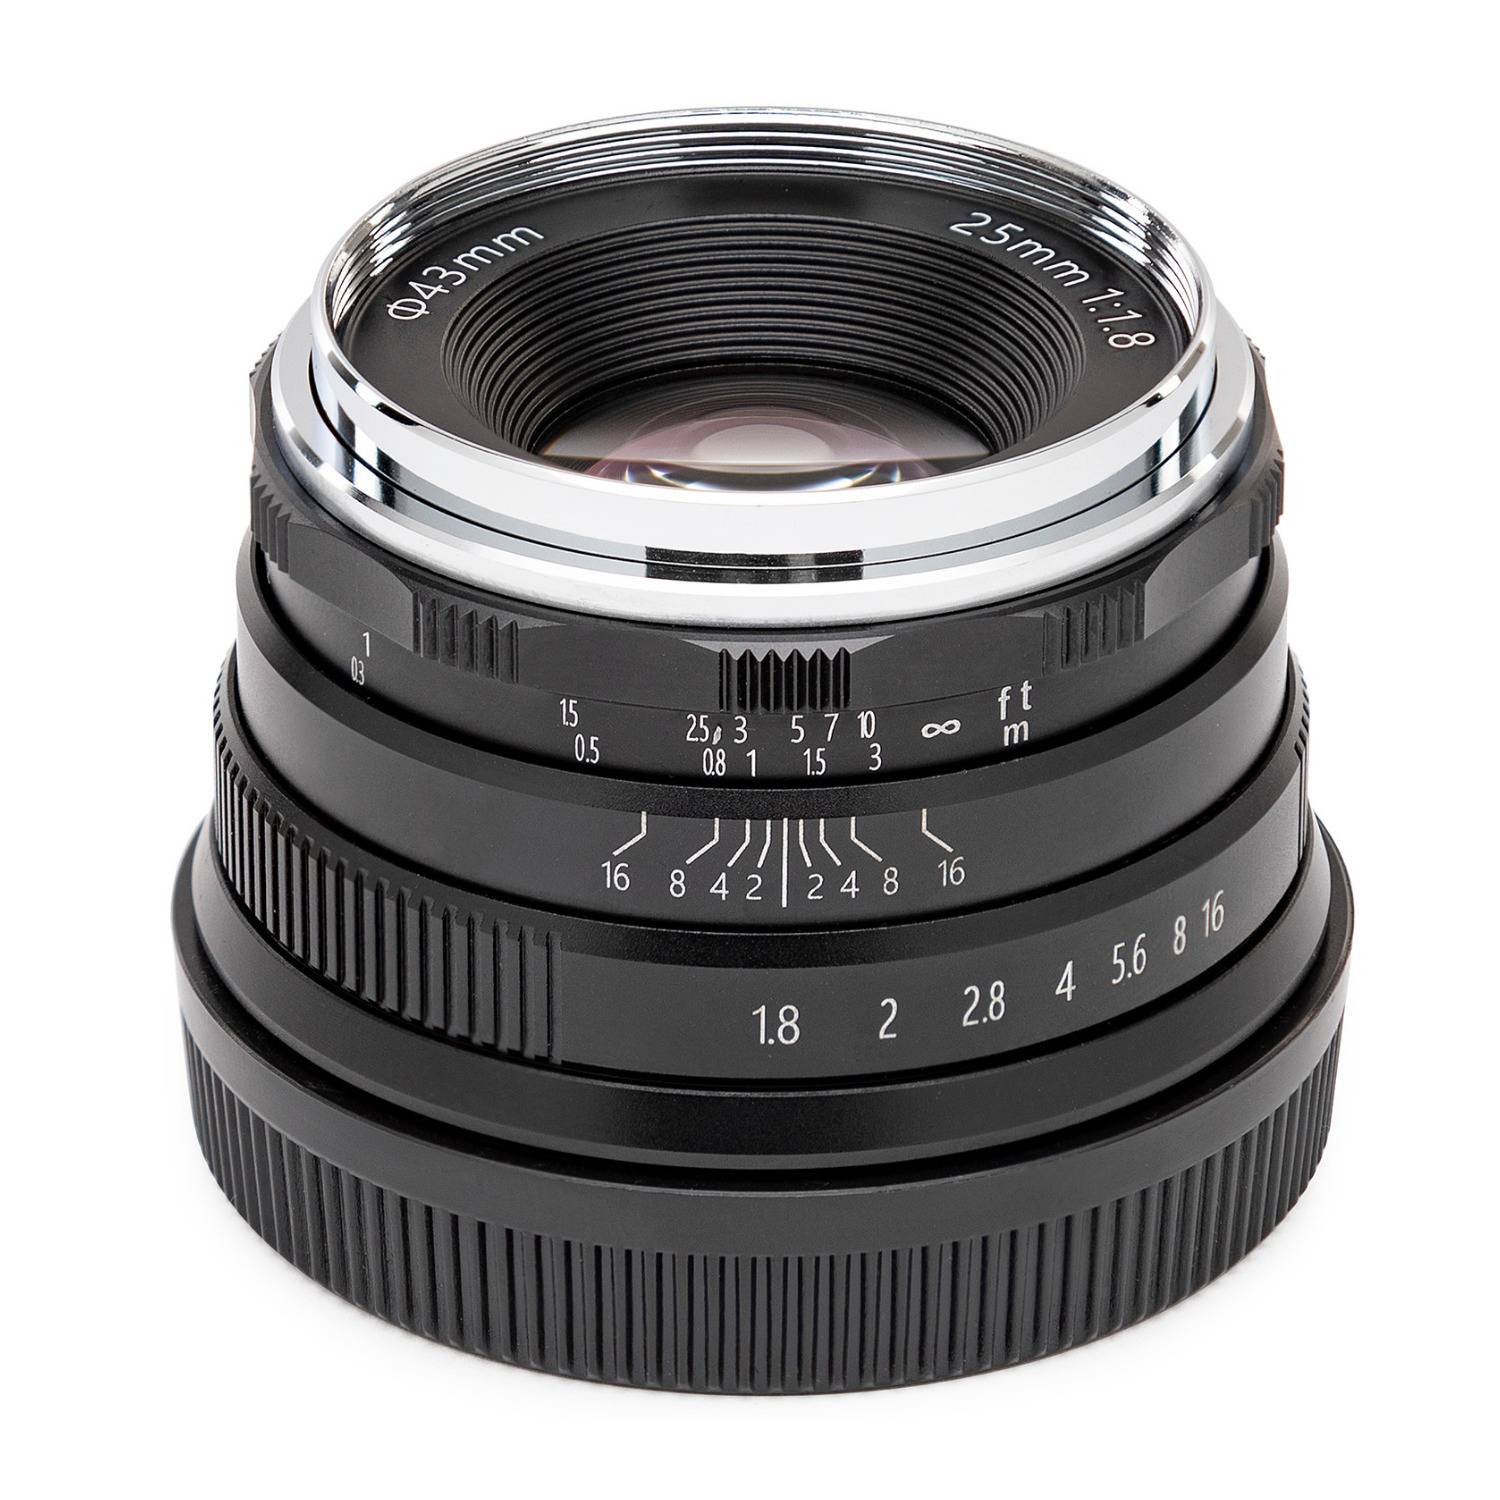 Koah Artisans Series 25mm f/1.8 Large Aperture Manual Focus Lens for Fujifilm FX (Black)